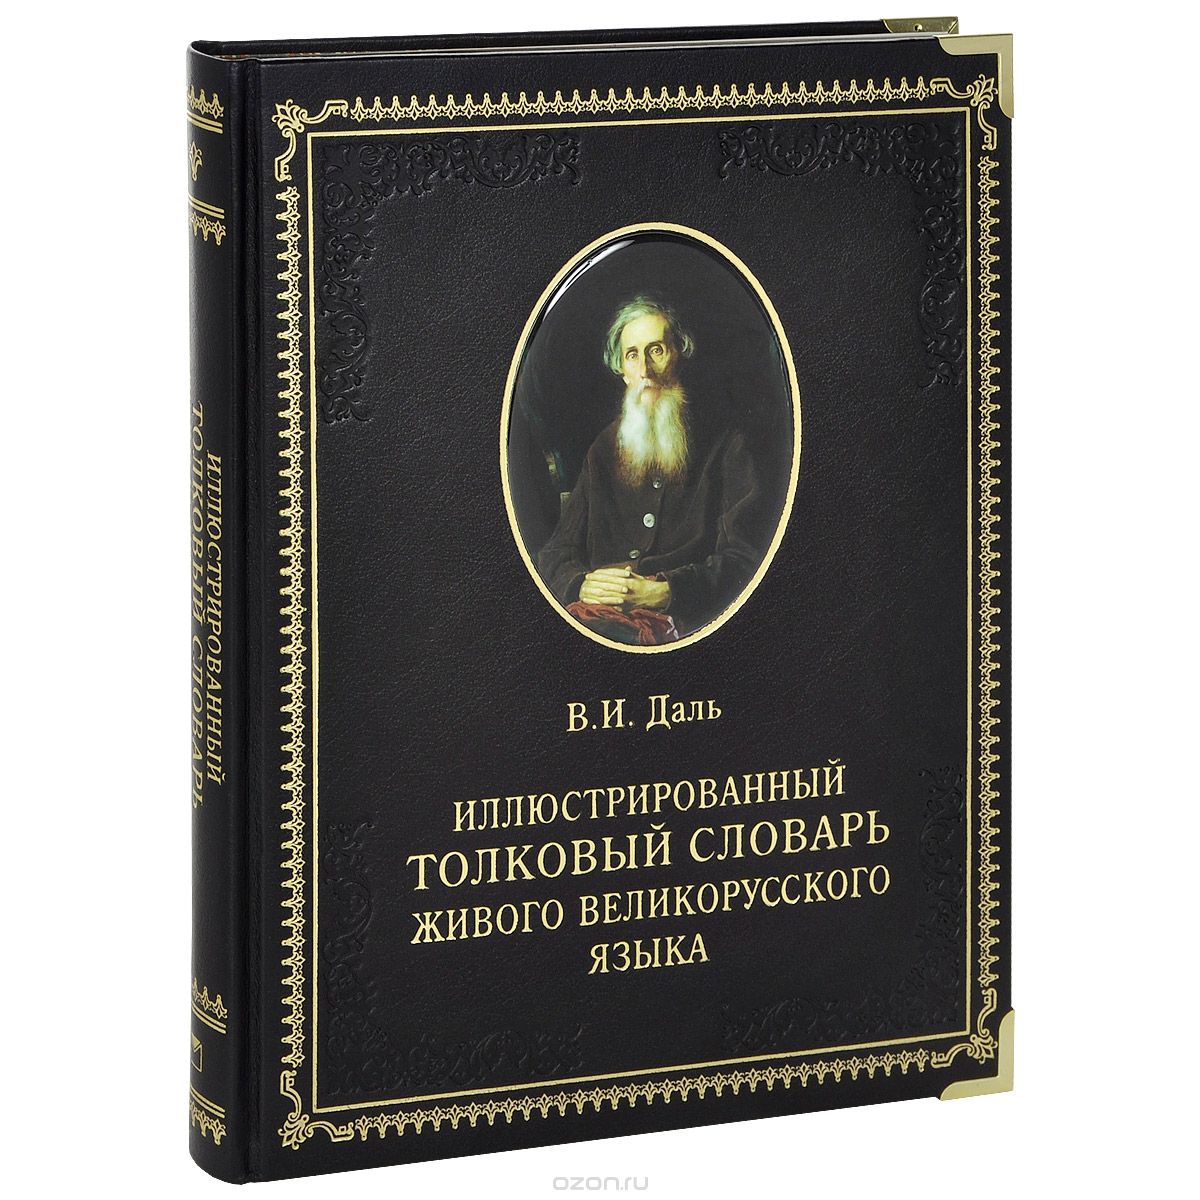 Иллюстрированный толковый словарь живого великорусского языка (подарочное издание), В. И. Даль